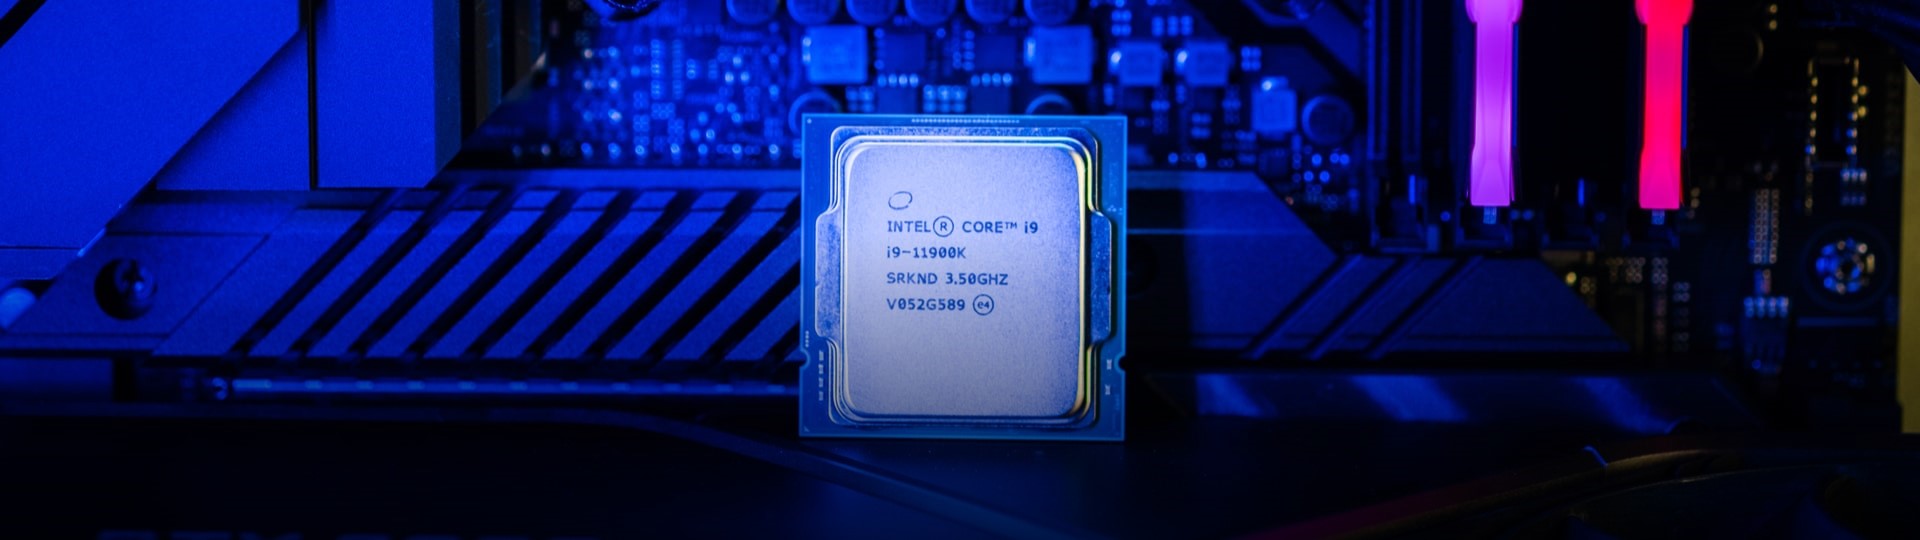 Americká společnost Intel bude vyrábět čipy pro firmy Amazon a Qualcomm